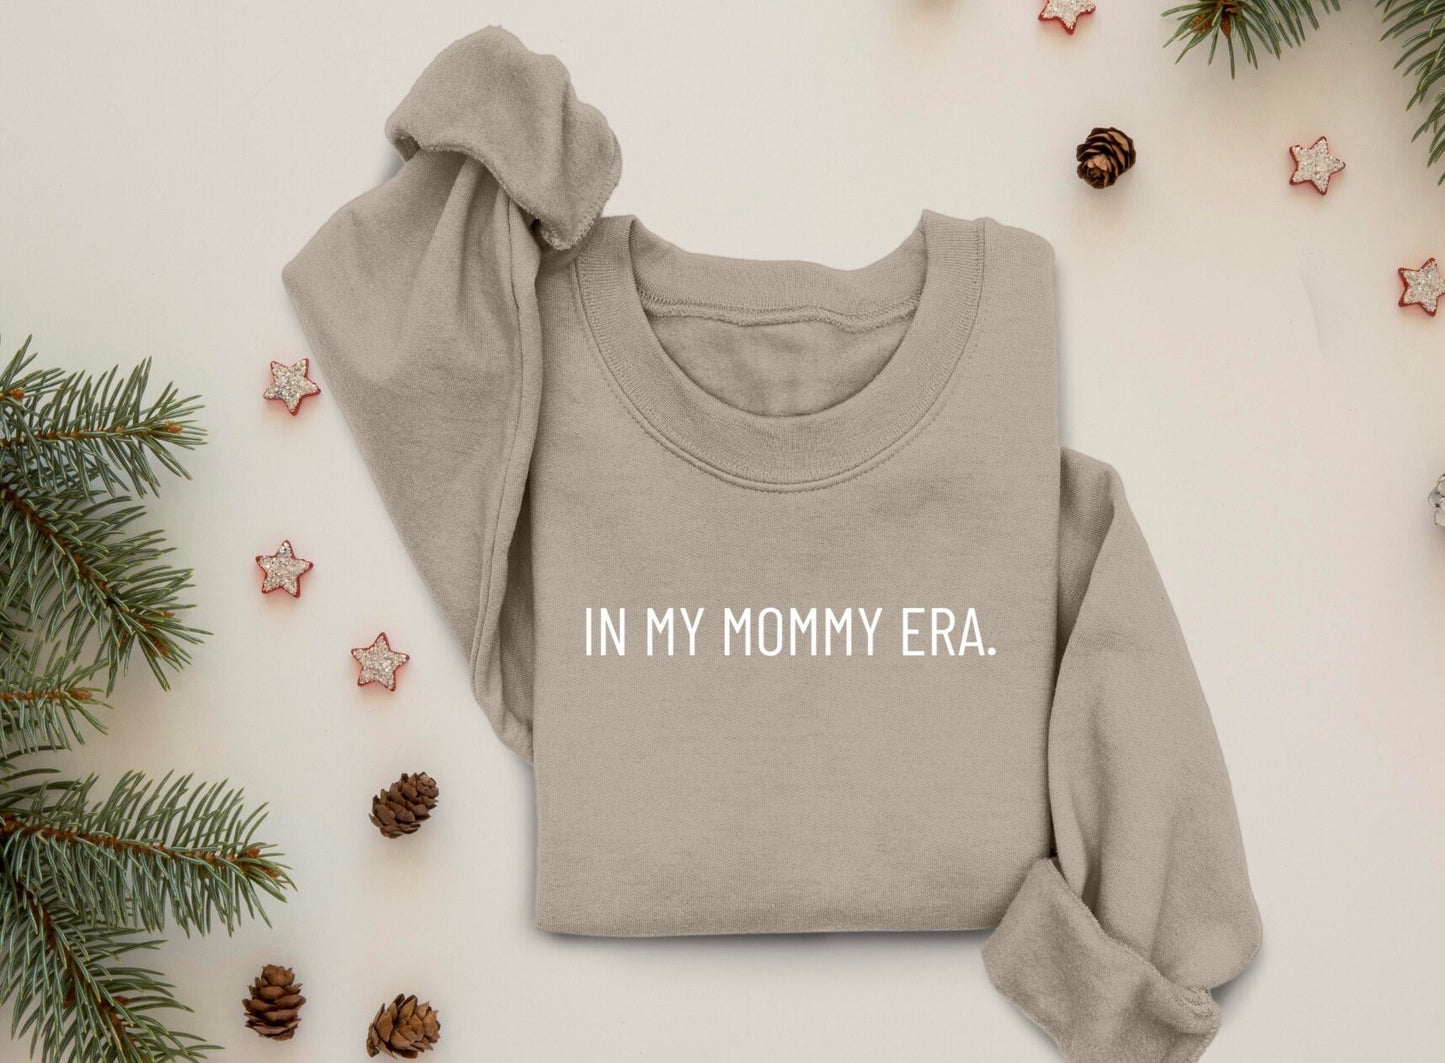 In My Mommy Era Sweatshirt, In My Mommy Era Shirt, In My Mommy Era Crewneck, In My Mommy Era Sweater, Oversized Sweater, Comfy Sweatshirt